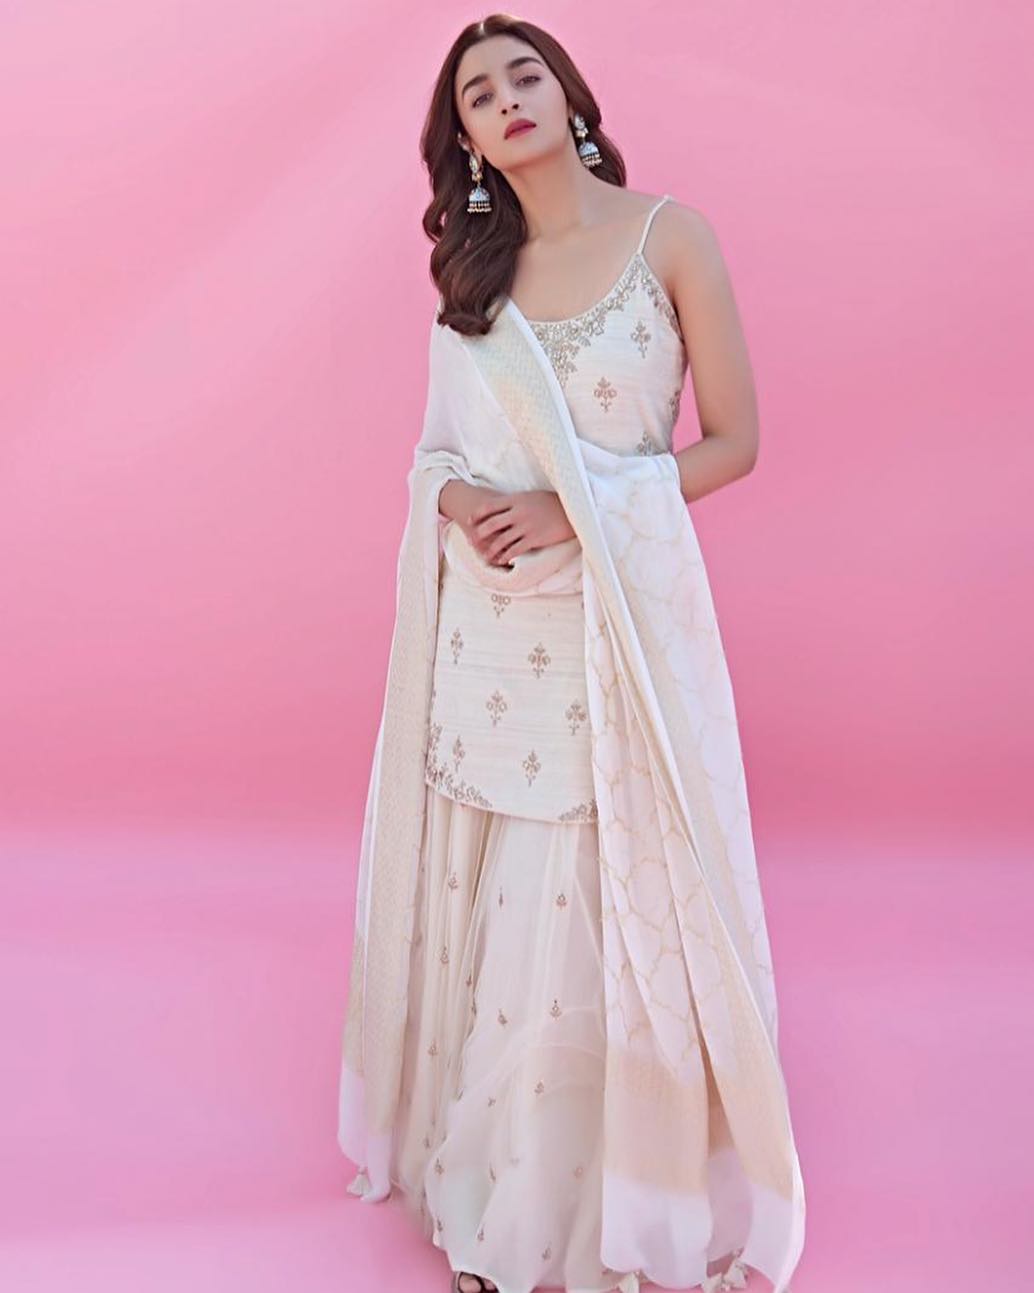 Bollywood Actresses Looks Gorgeous In White Outfit Deepika Padukone Kangana  Raanut Alia Bhatt | फैशन गेम में बॉलीवुड एक्ट्रेसेस की पहली पसंद बना व्हाइट  कलर, देखें एक्ट्रेस की ...